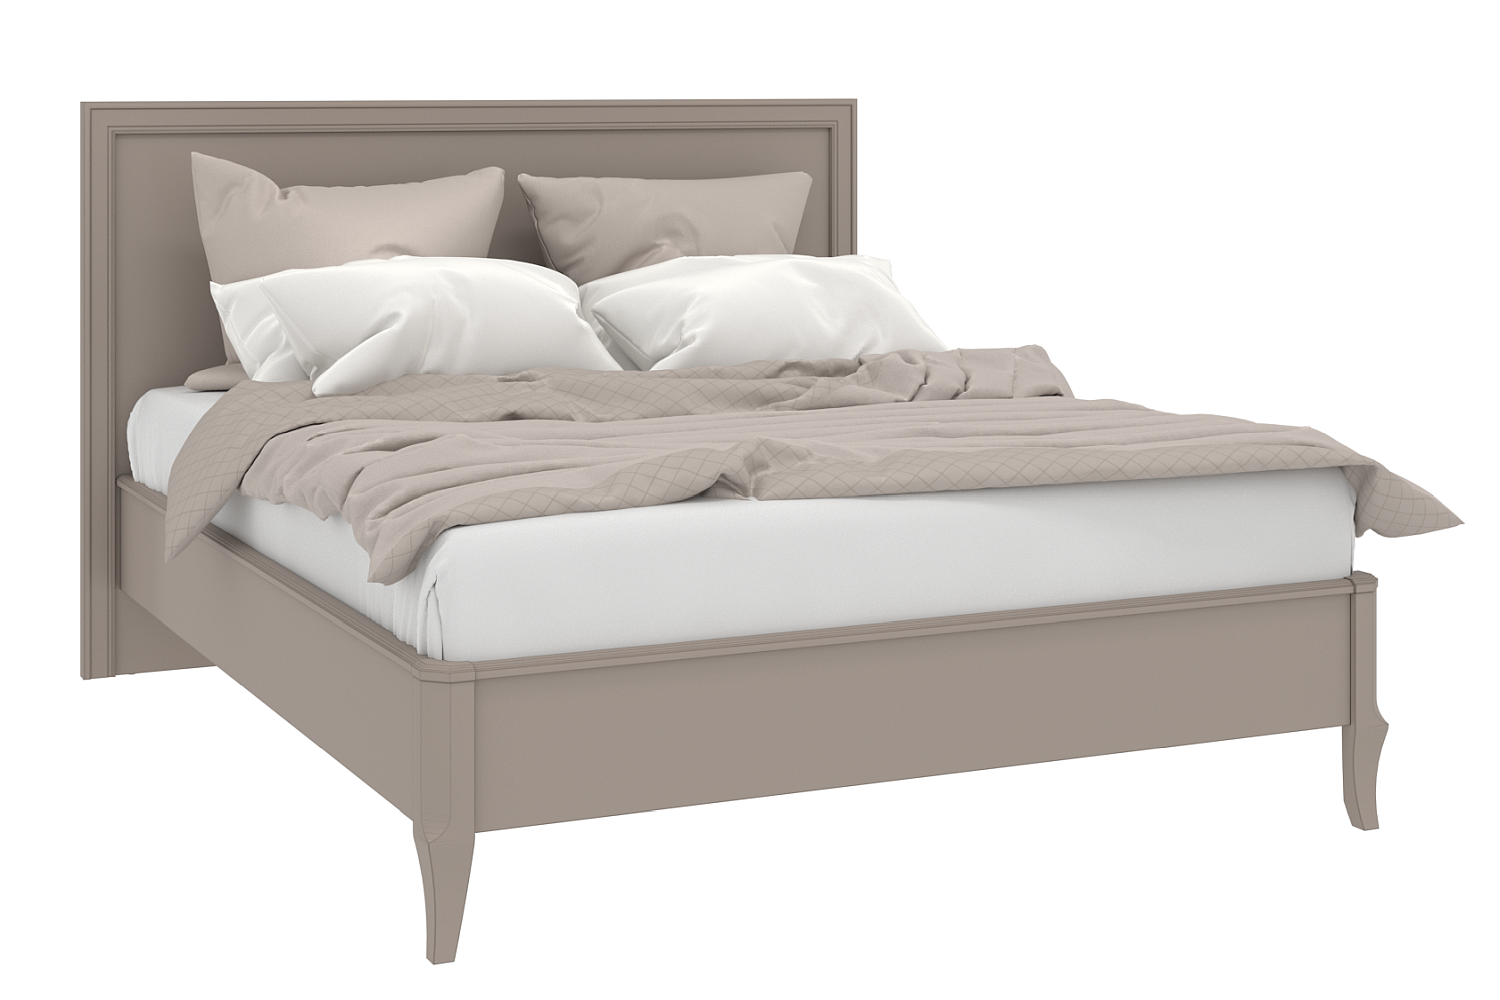 Двуспальные кровати - изображение №2 "Кровать Онтарио"  на www.Angstrem-mebel.ru